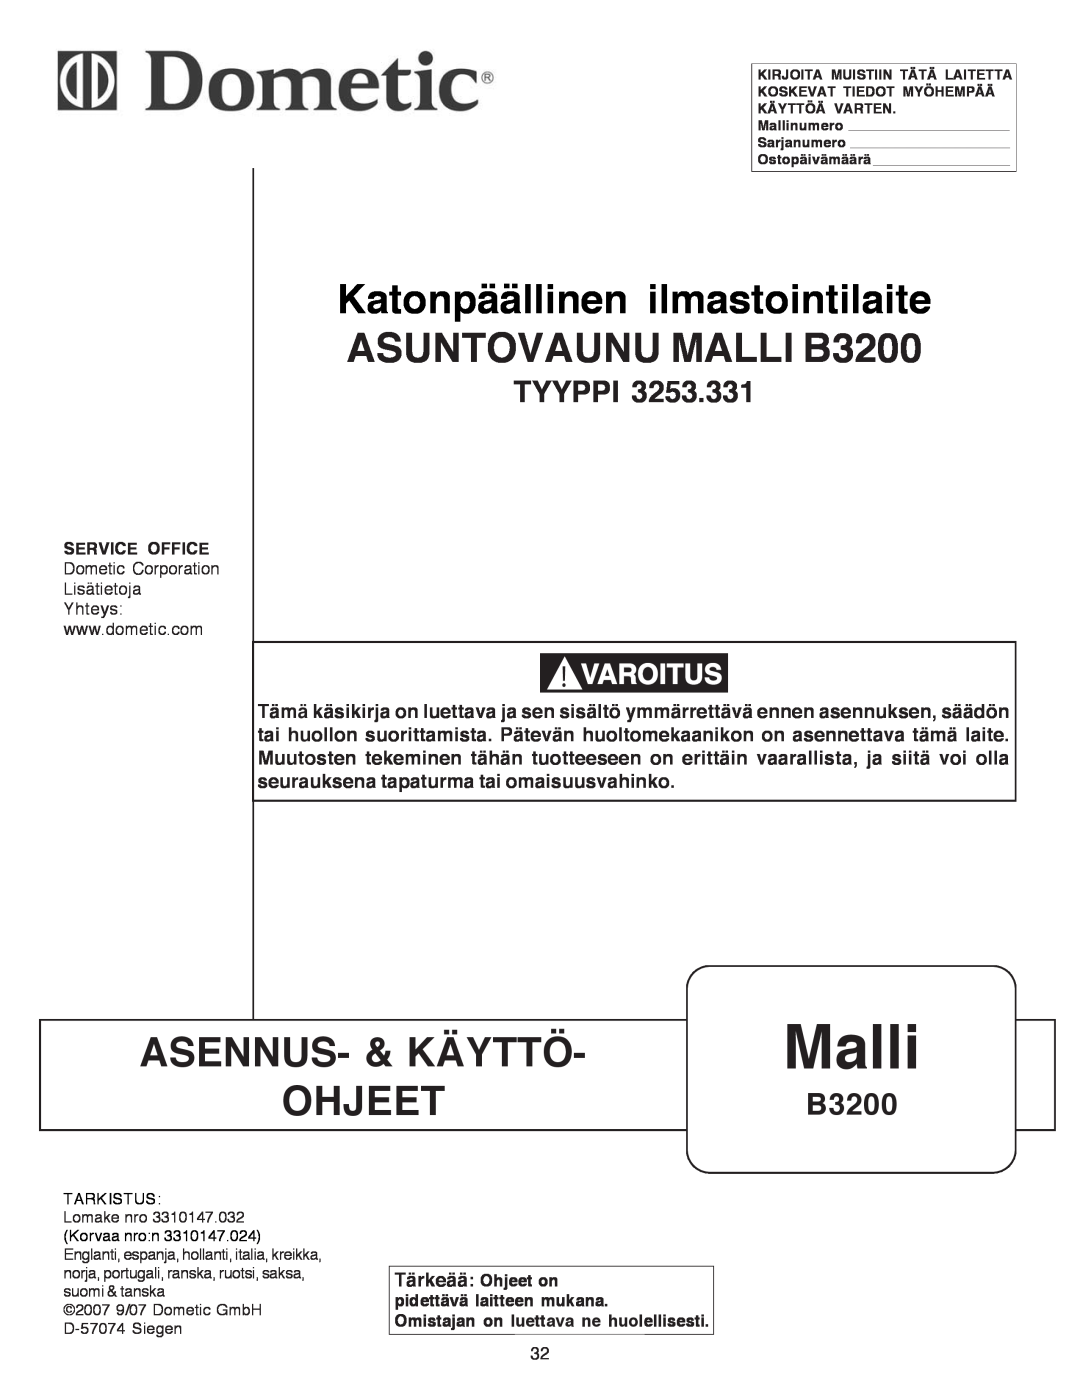 Dometic B3200 manual Malli, Asennus- & Käyttö, Ohjeet, Tyyppi, Varoitus 